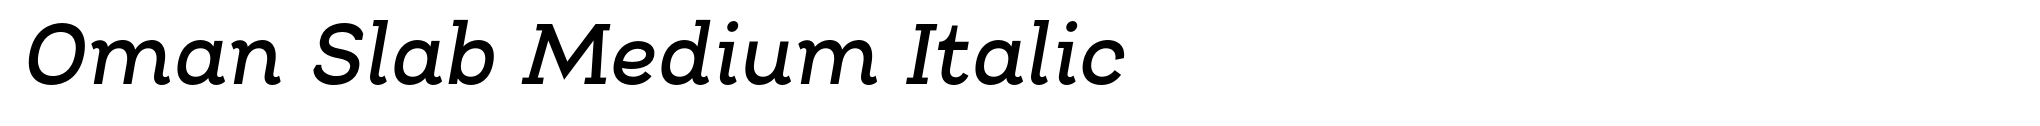 Oman Slab Medium Italic image